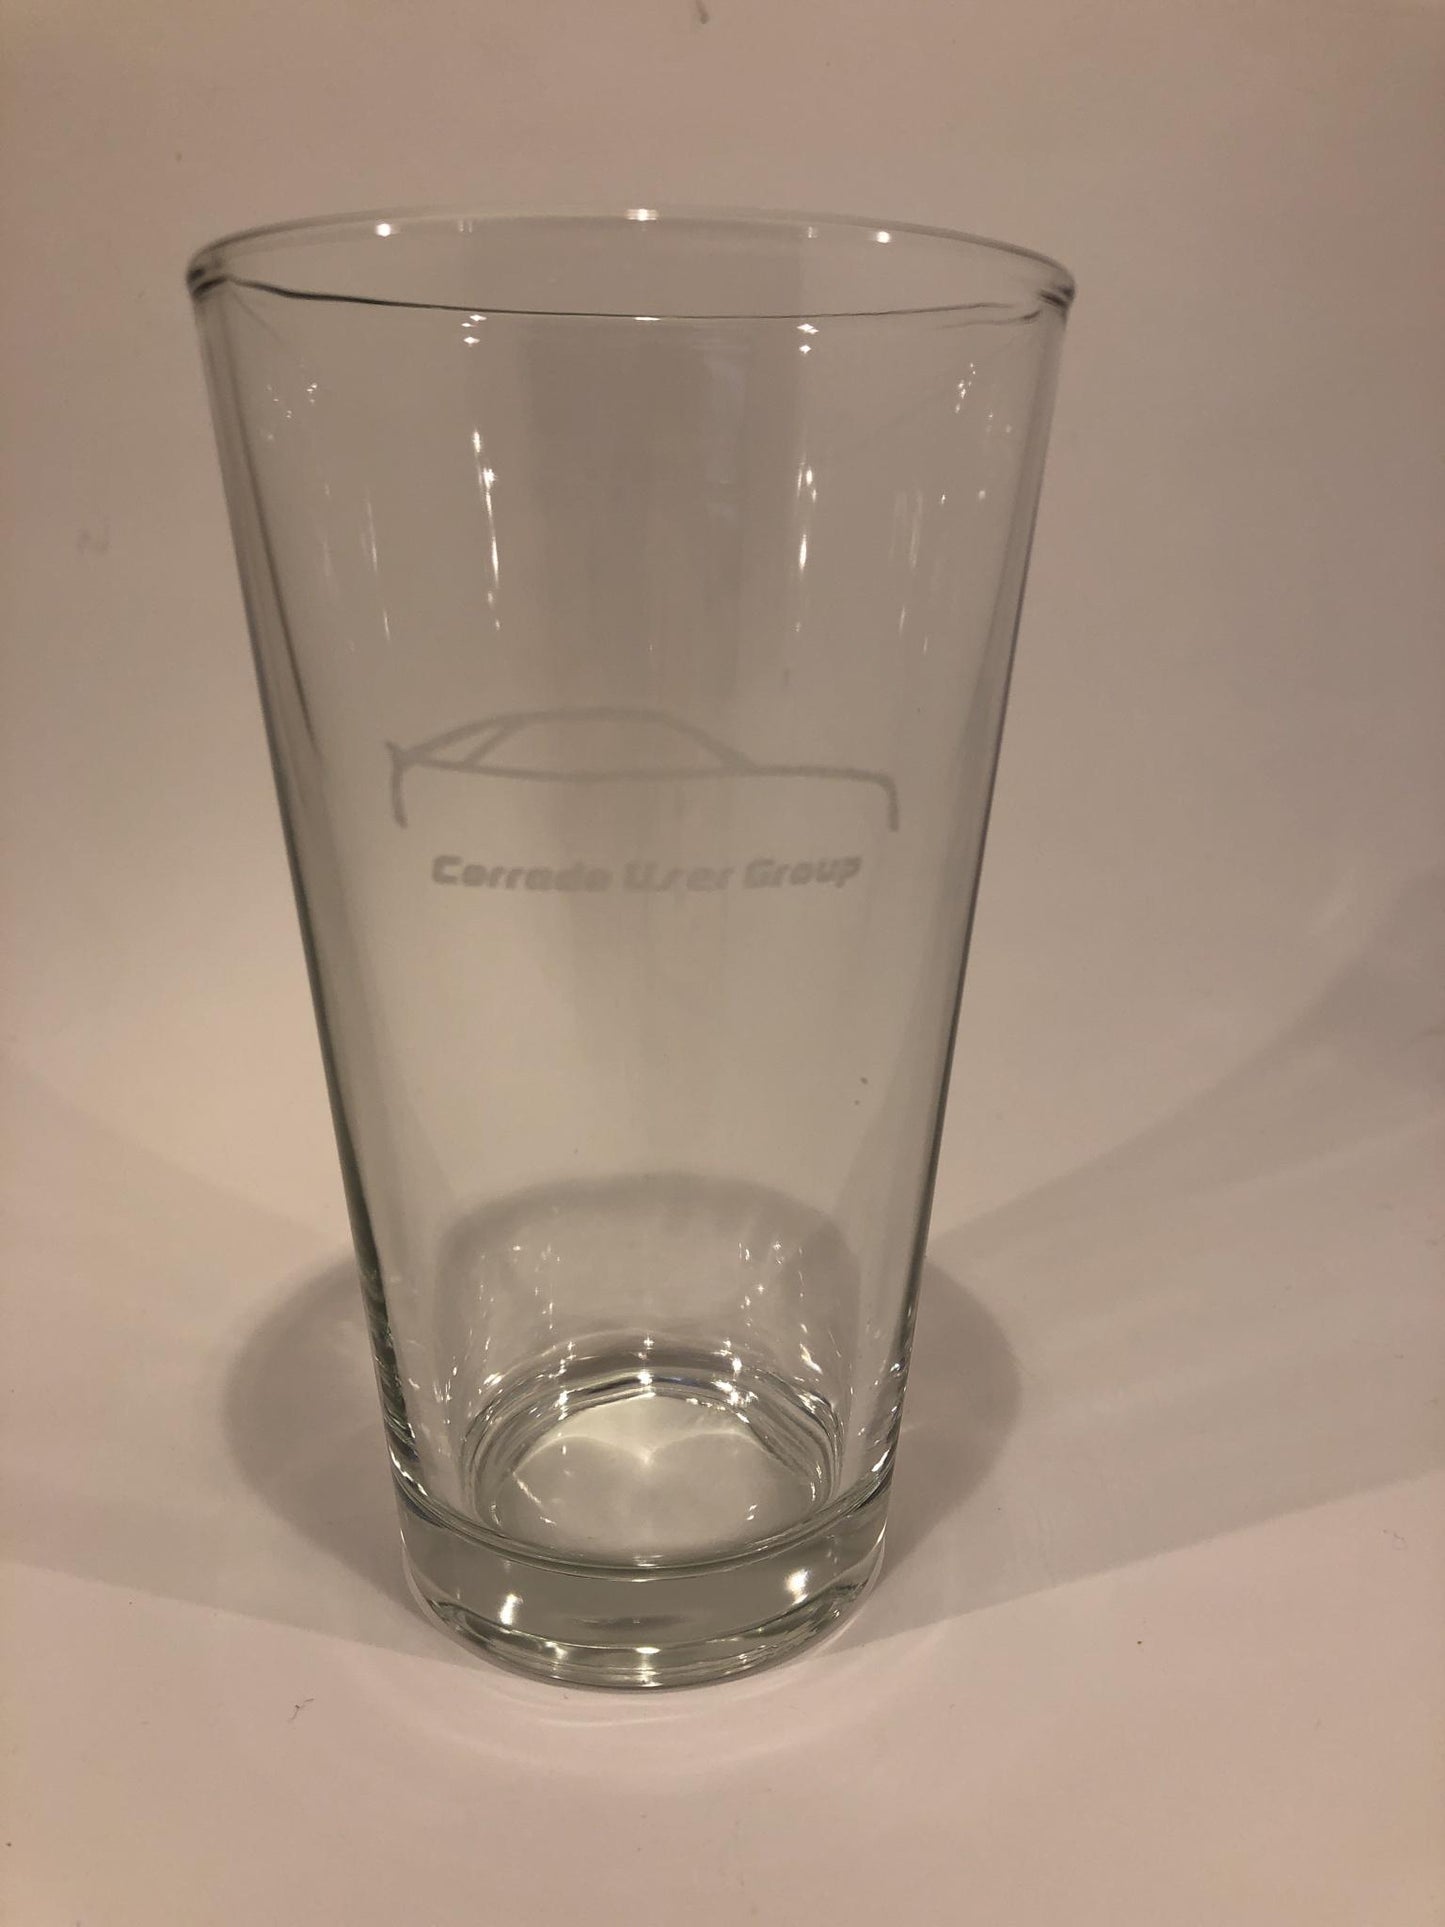 Corrado User Group Pint Glass